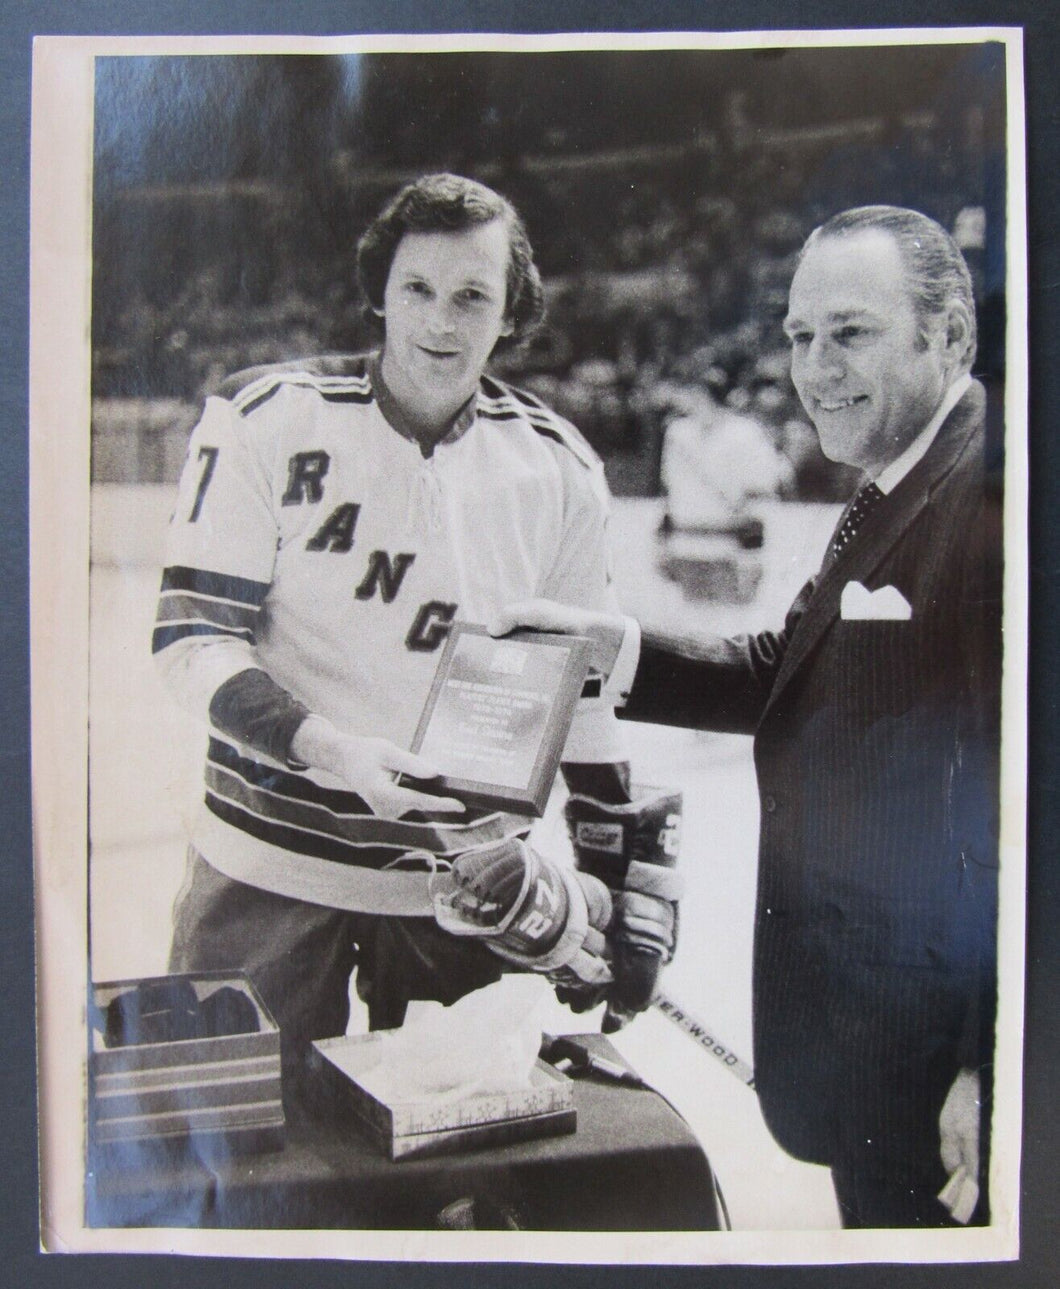 1977 NHL Hockey Ted Irvine Press Photo - NY Rangers Player of The Year Award